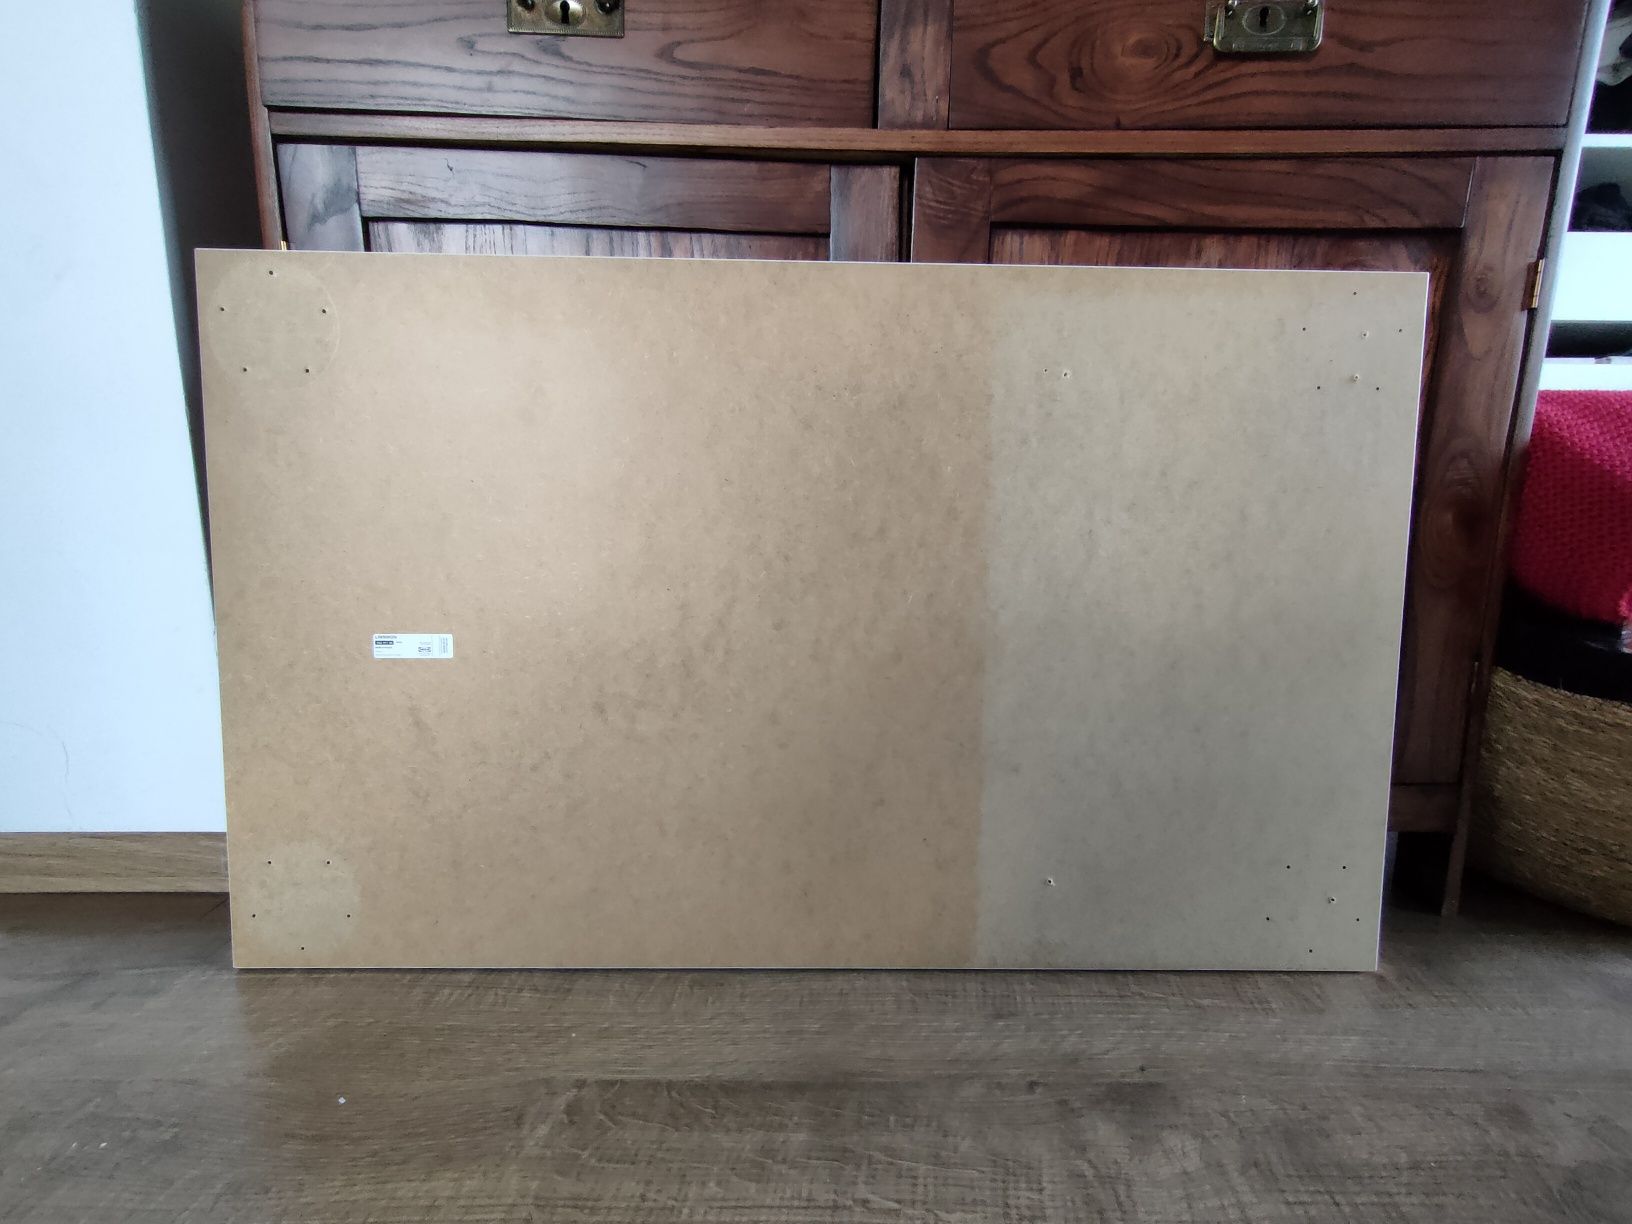 LINNMON blat do biurka  Ikea 
Blat, biały, 100x60 cm